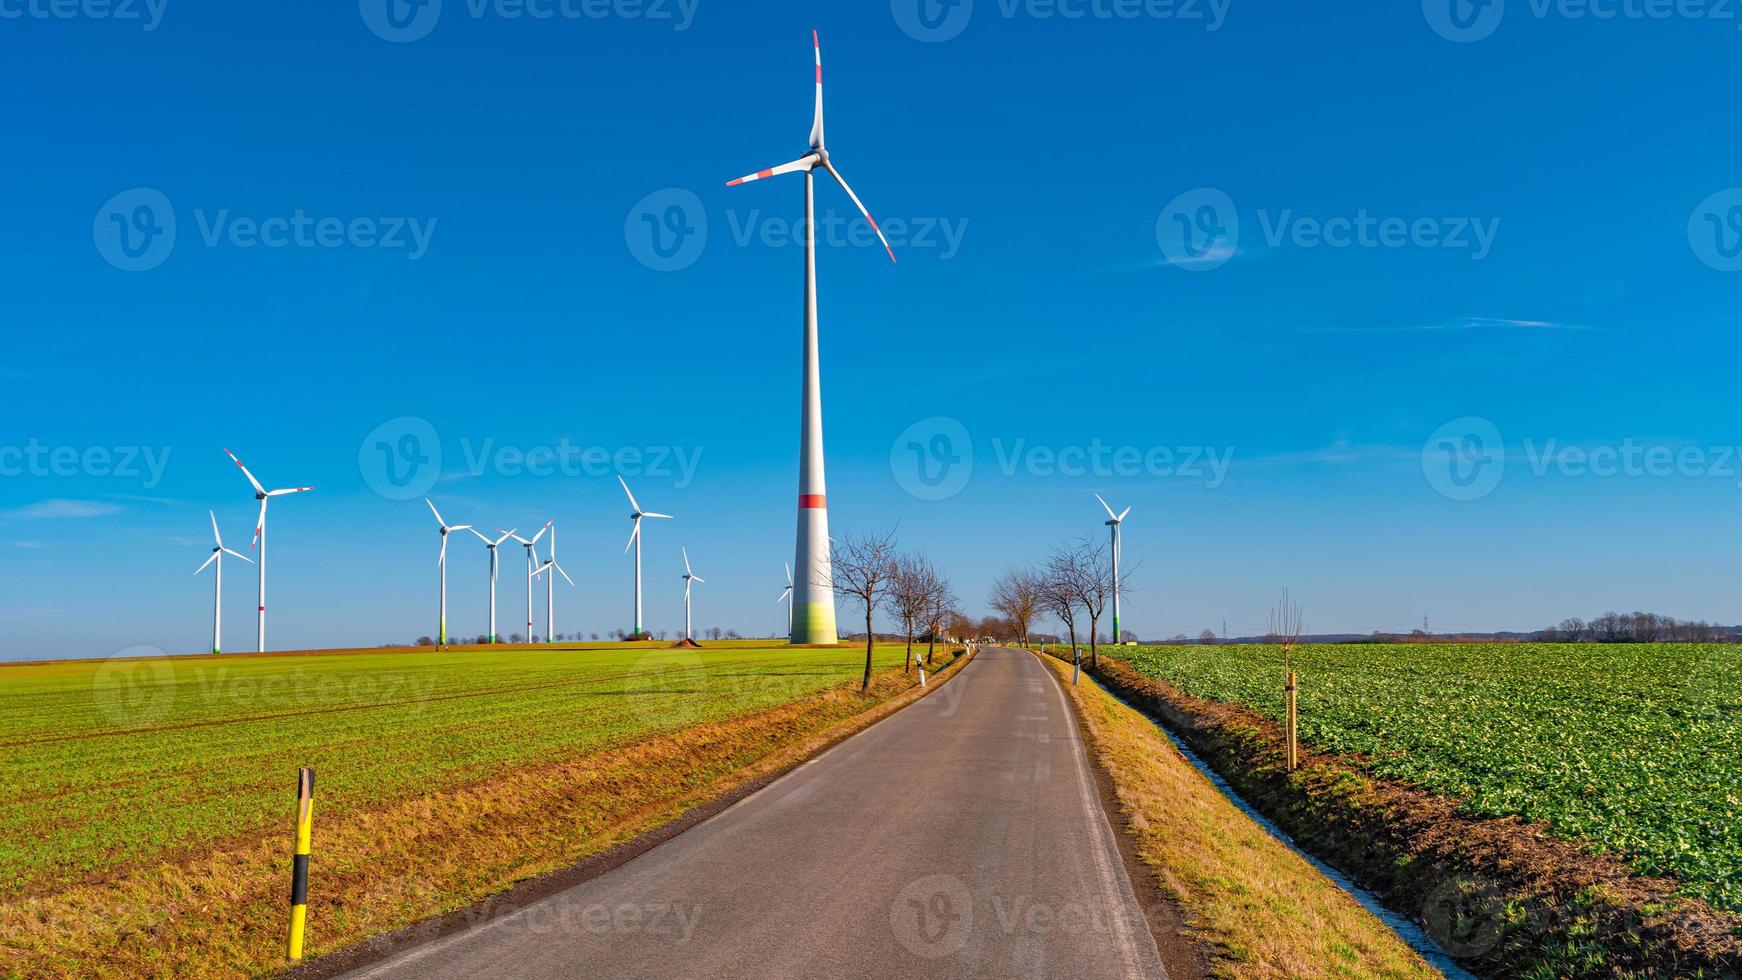 visie over- mooi boerderij landschap met vroeg voorjaar landbouw veld, wind turbines naar produceren groen energie en een eenzaam weg in de buurt Mittweida, duitsland, Bij blauw zonnig lucht. foto